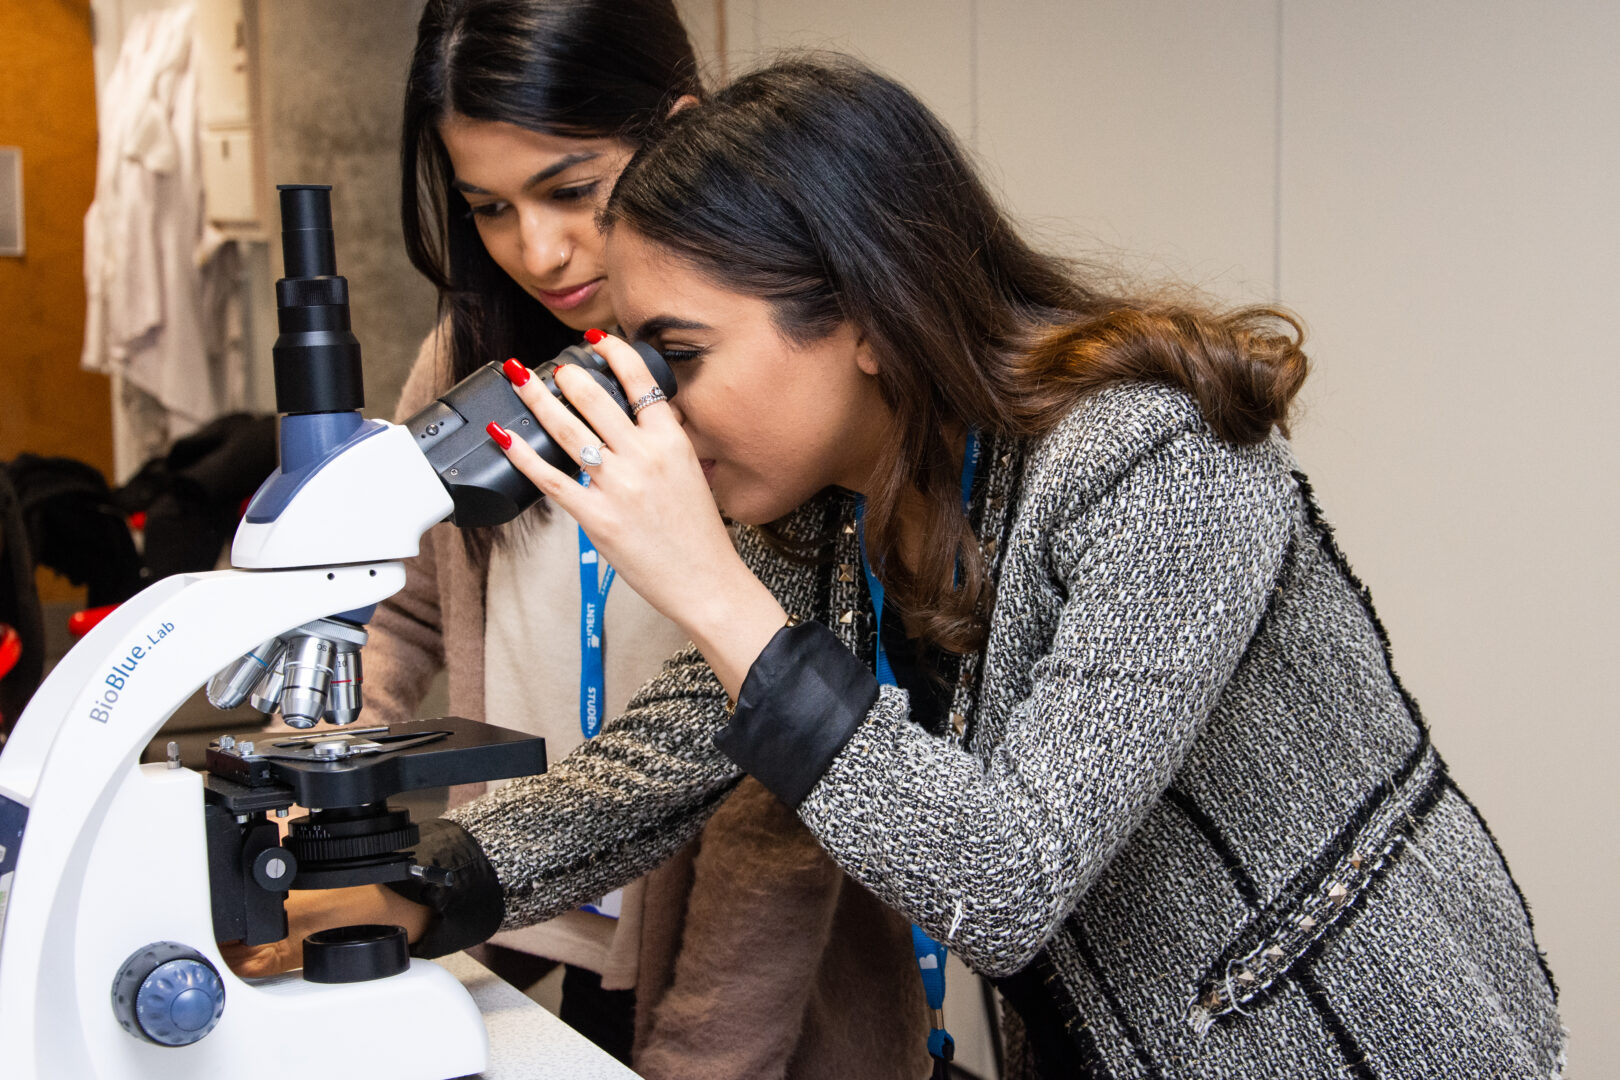 Microscope examine